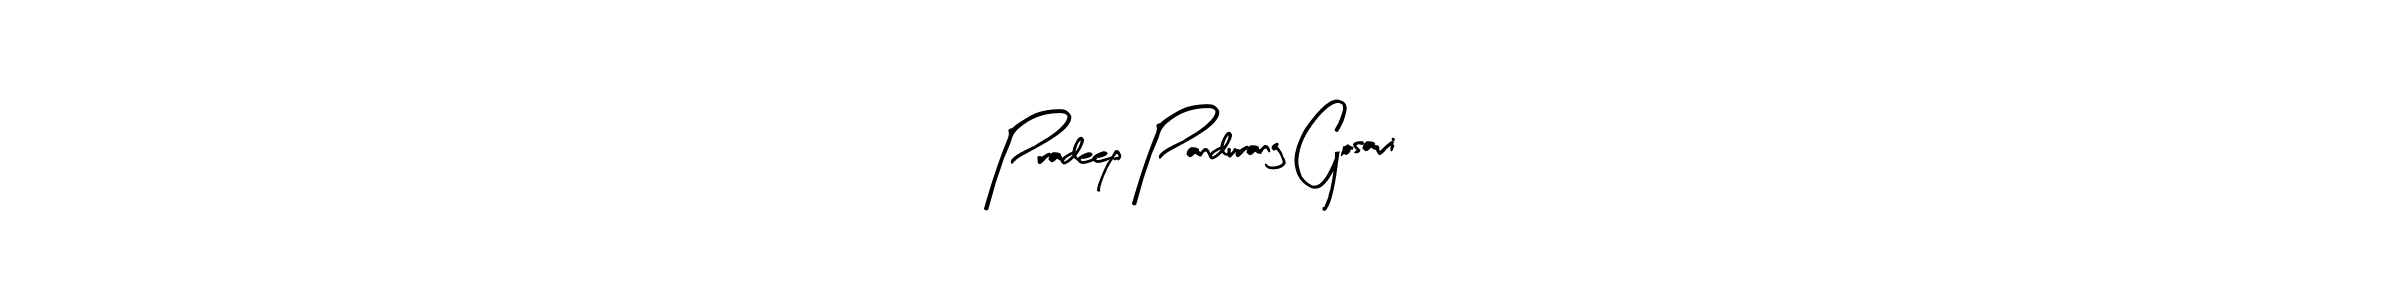 Pradeep Pandurang Gosavi stylish signature style. Best Handwritten Sign (Arty Signature) for my name. Handwritten Signature Collection Ideas for my name Pradeep Pandurang Gosavi. Pradeep Pandurang Gosavi signature style 8 images and pictures png